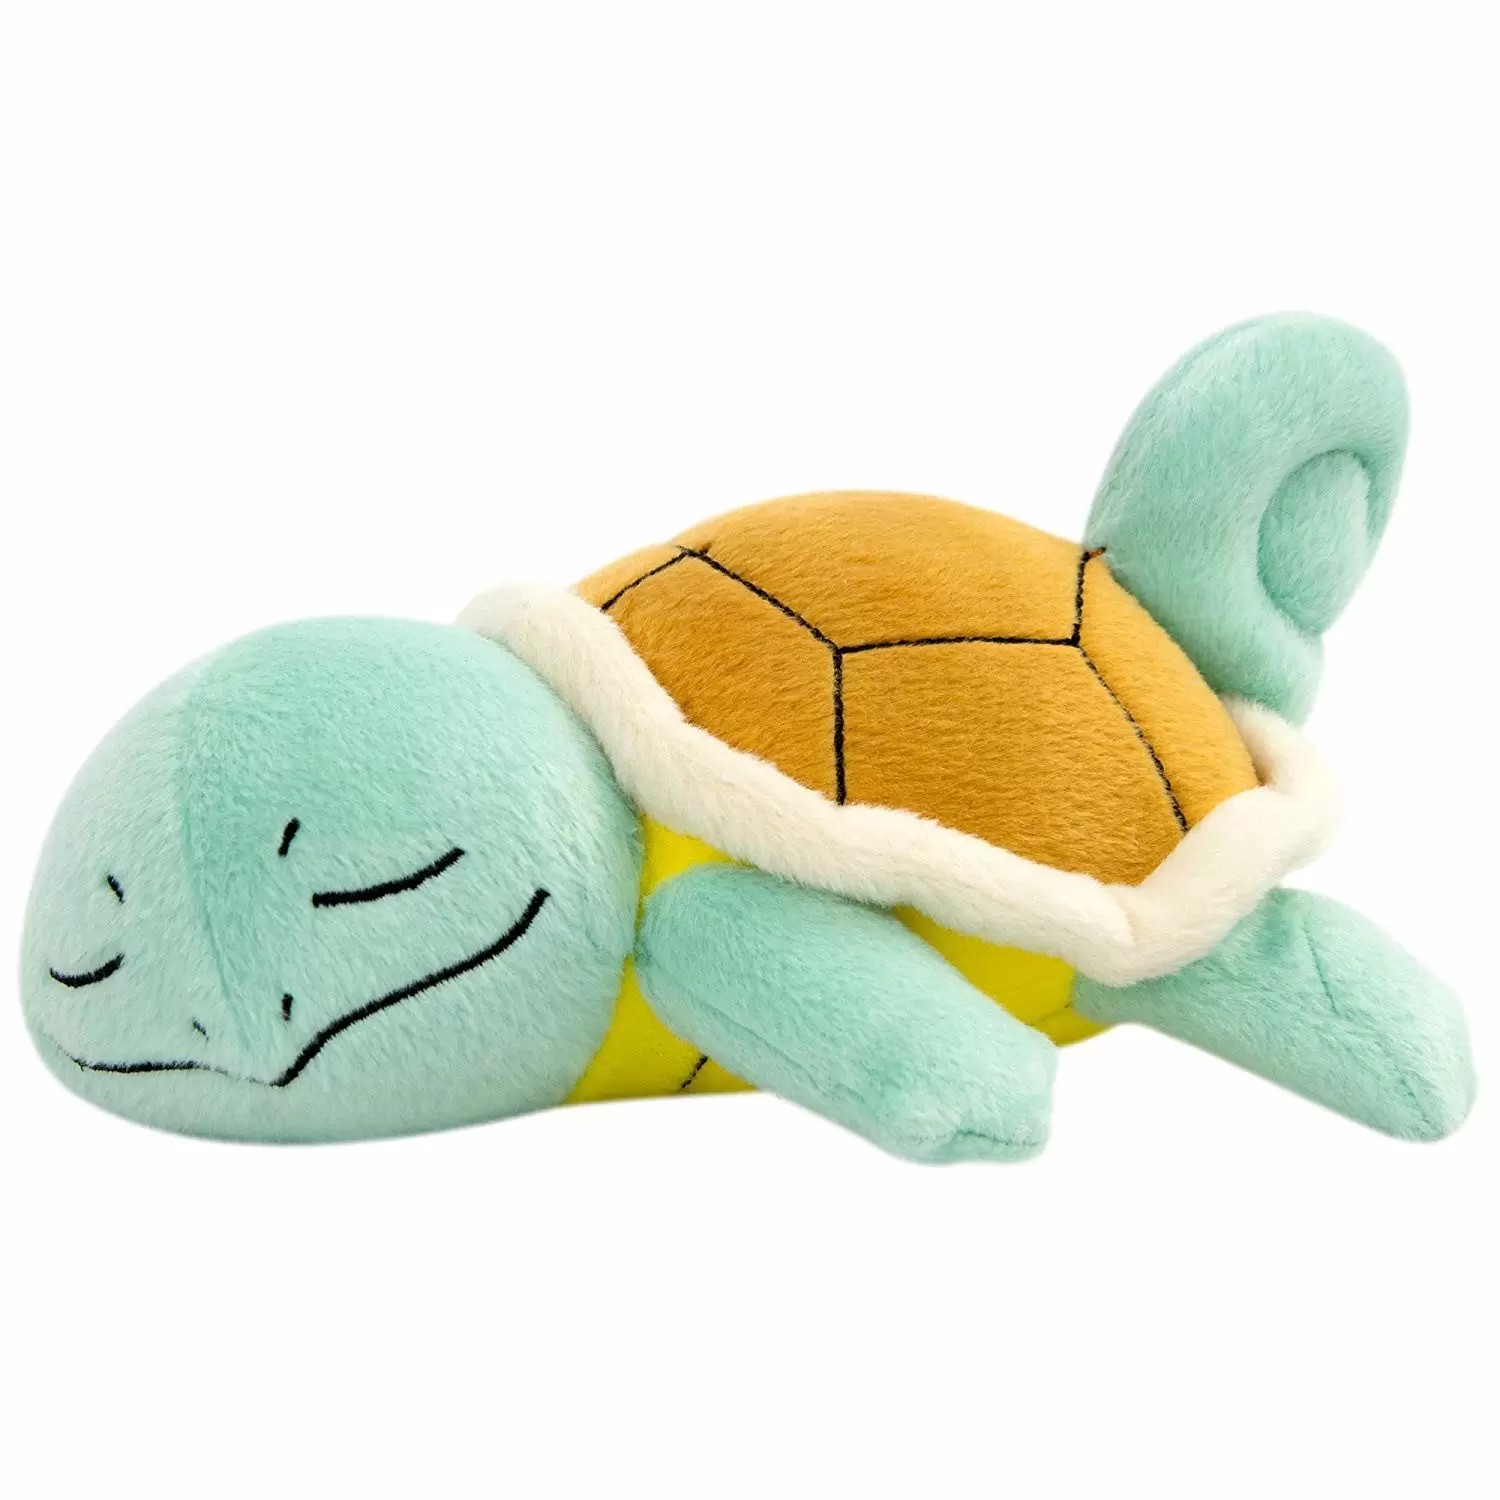 Carapuce endormi - objet Peluche Pokémon Tomy